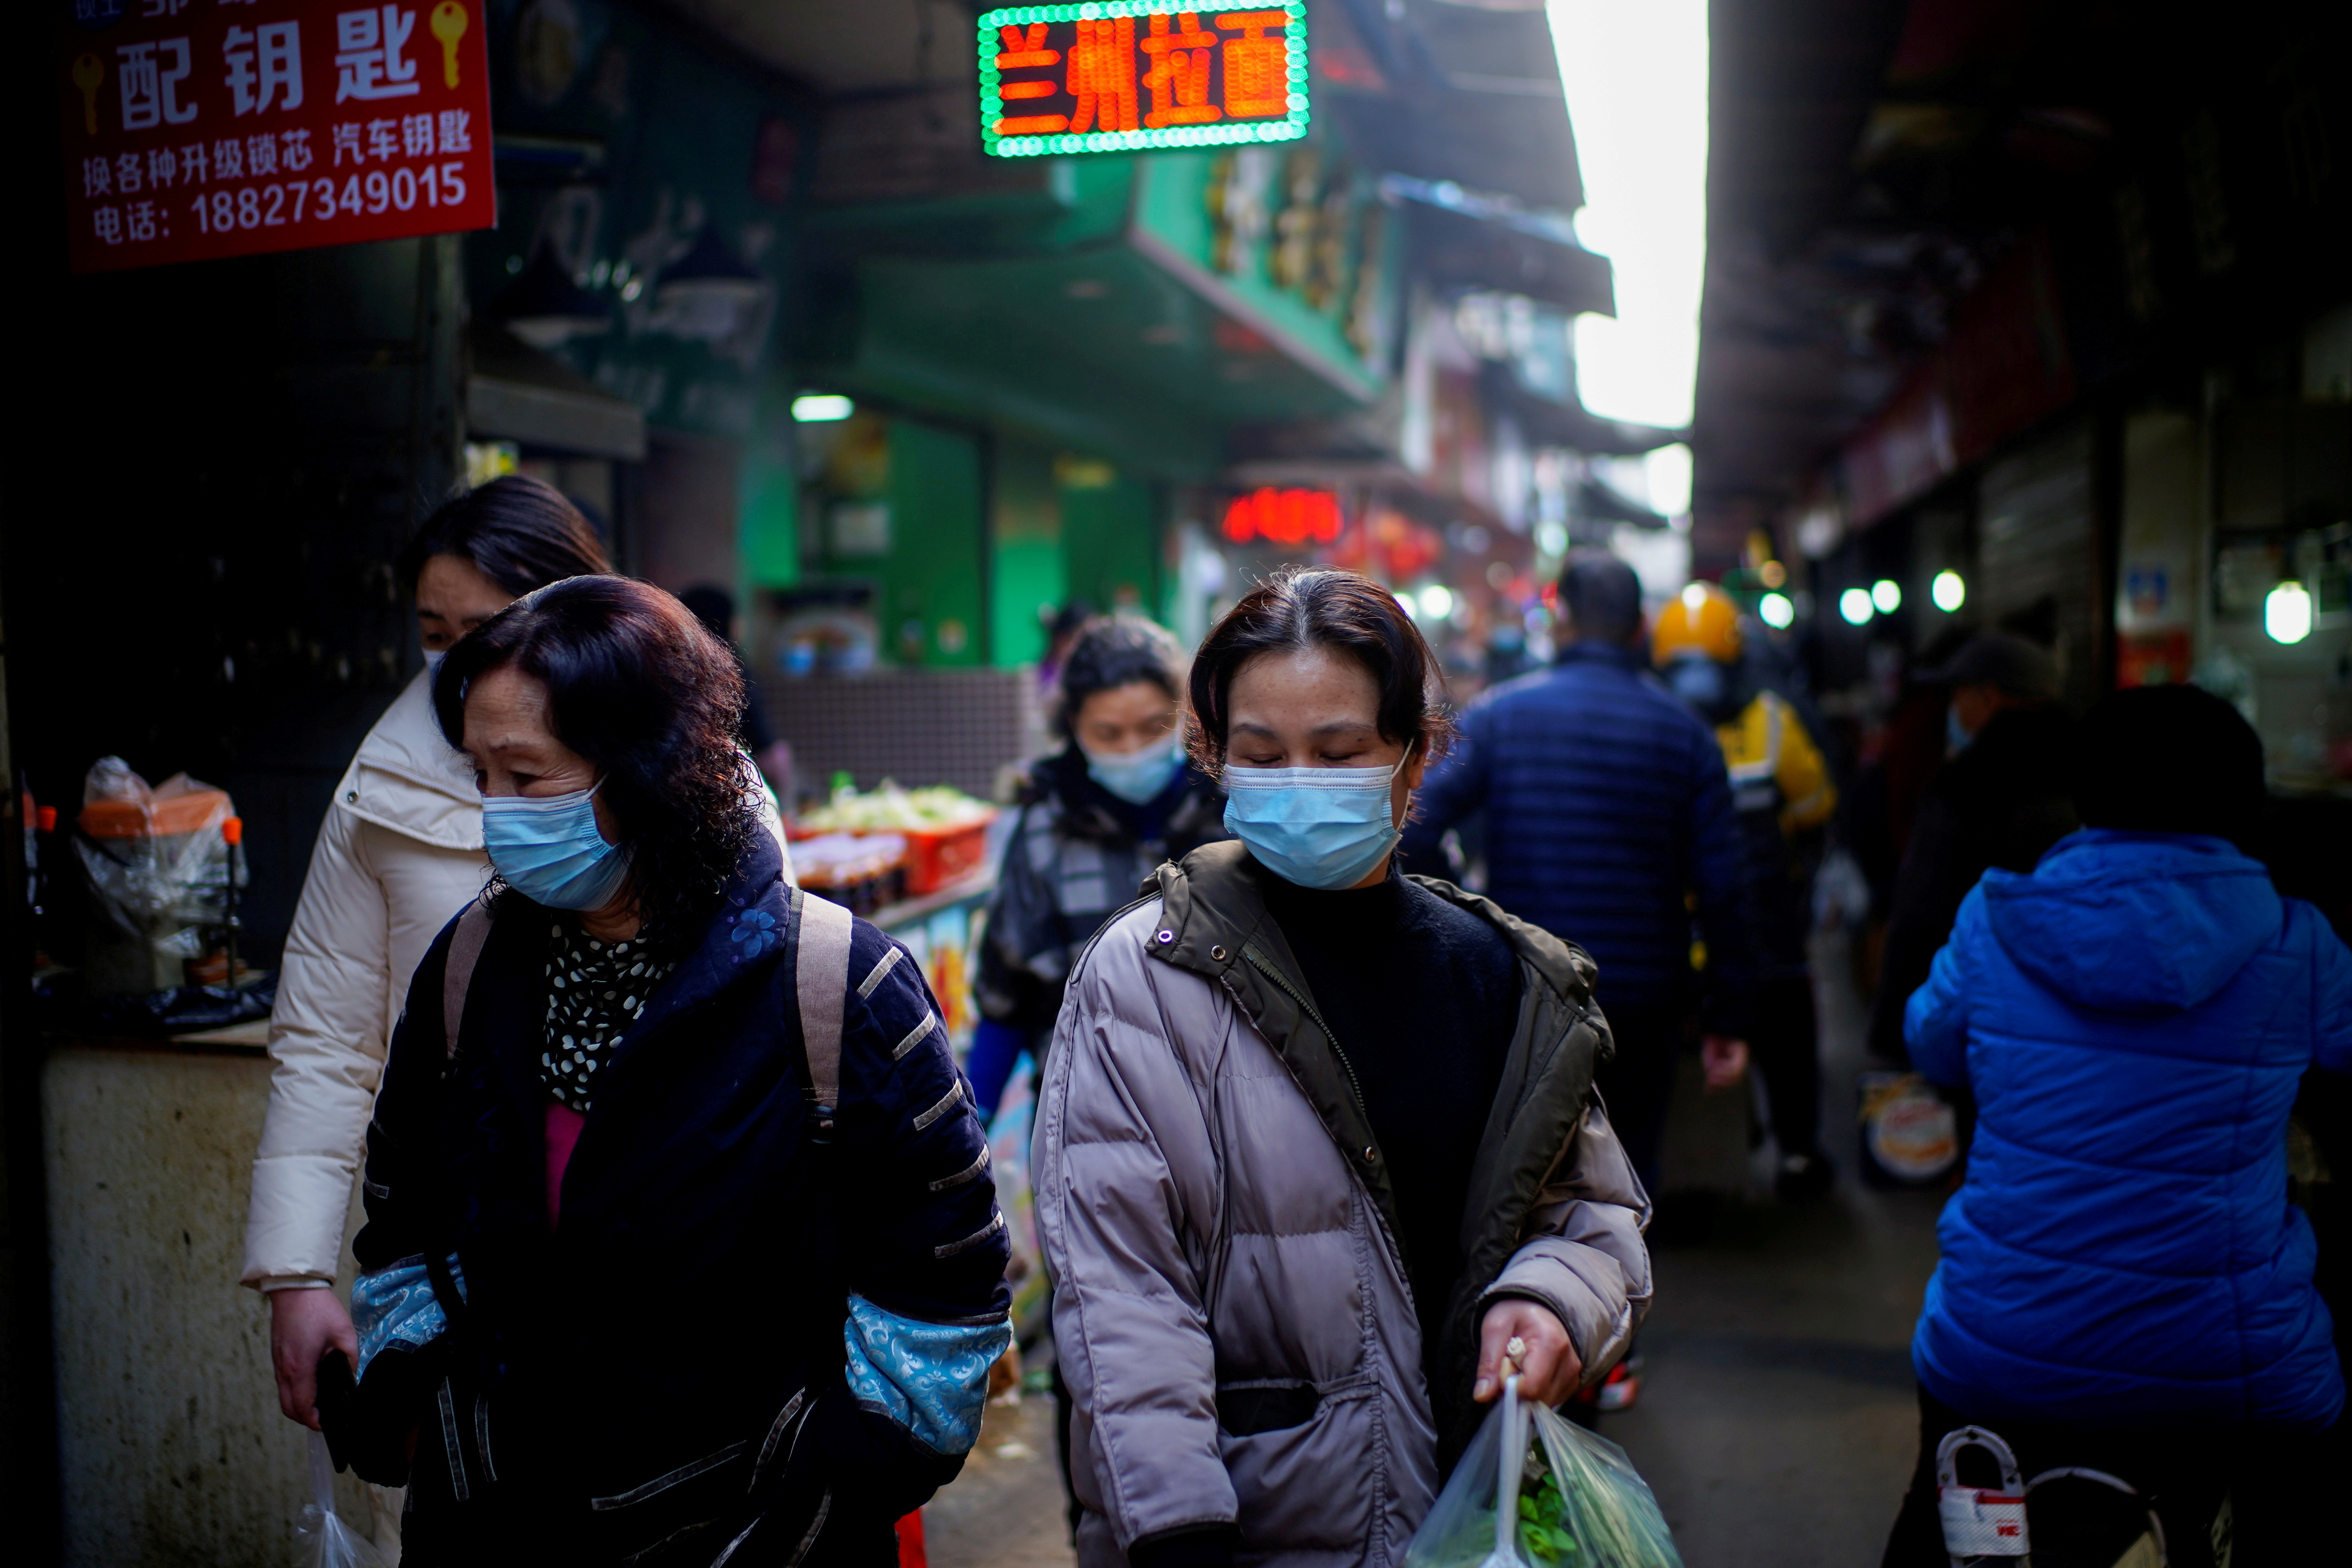 FILE PHOTO: People wearing face masks walk on a street market, following an outbreak of the coronavirus disease (COVID-19) in Wuhan